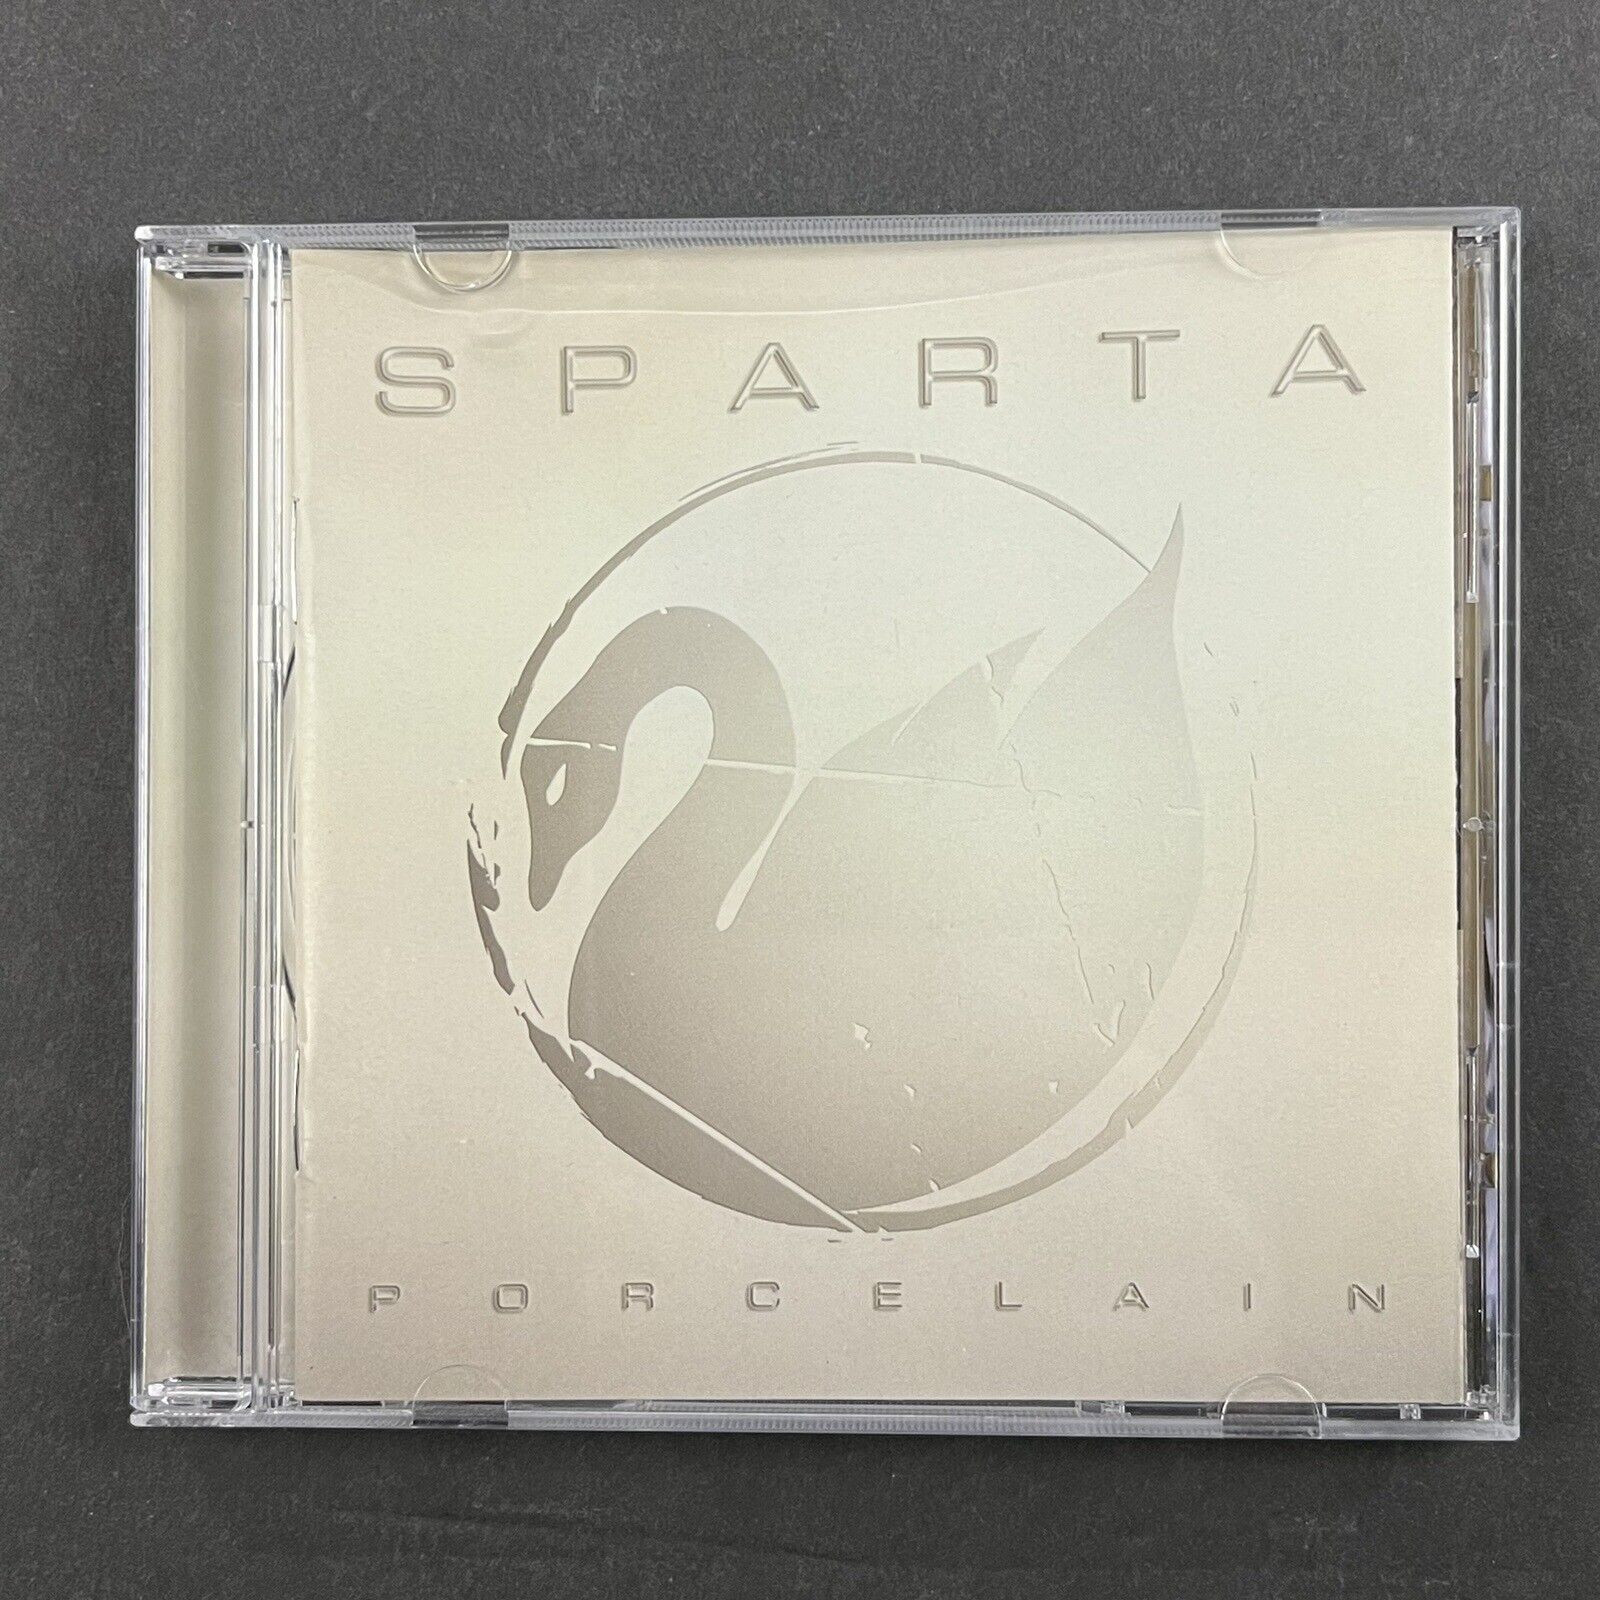 Sparta - Porcelain (CD 2004 Geffen)